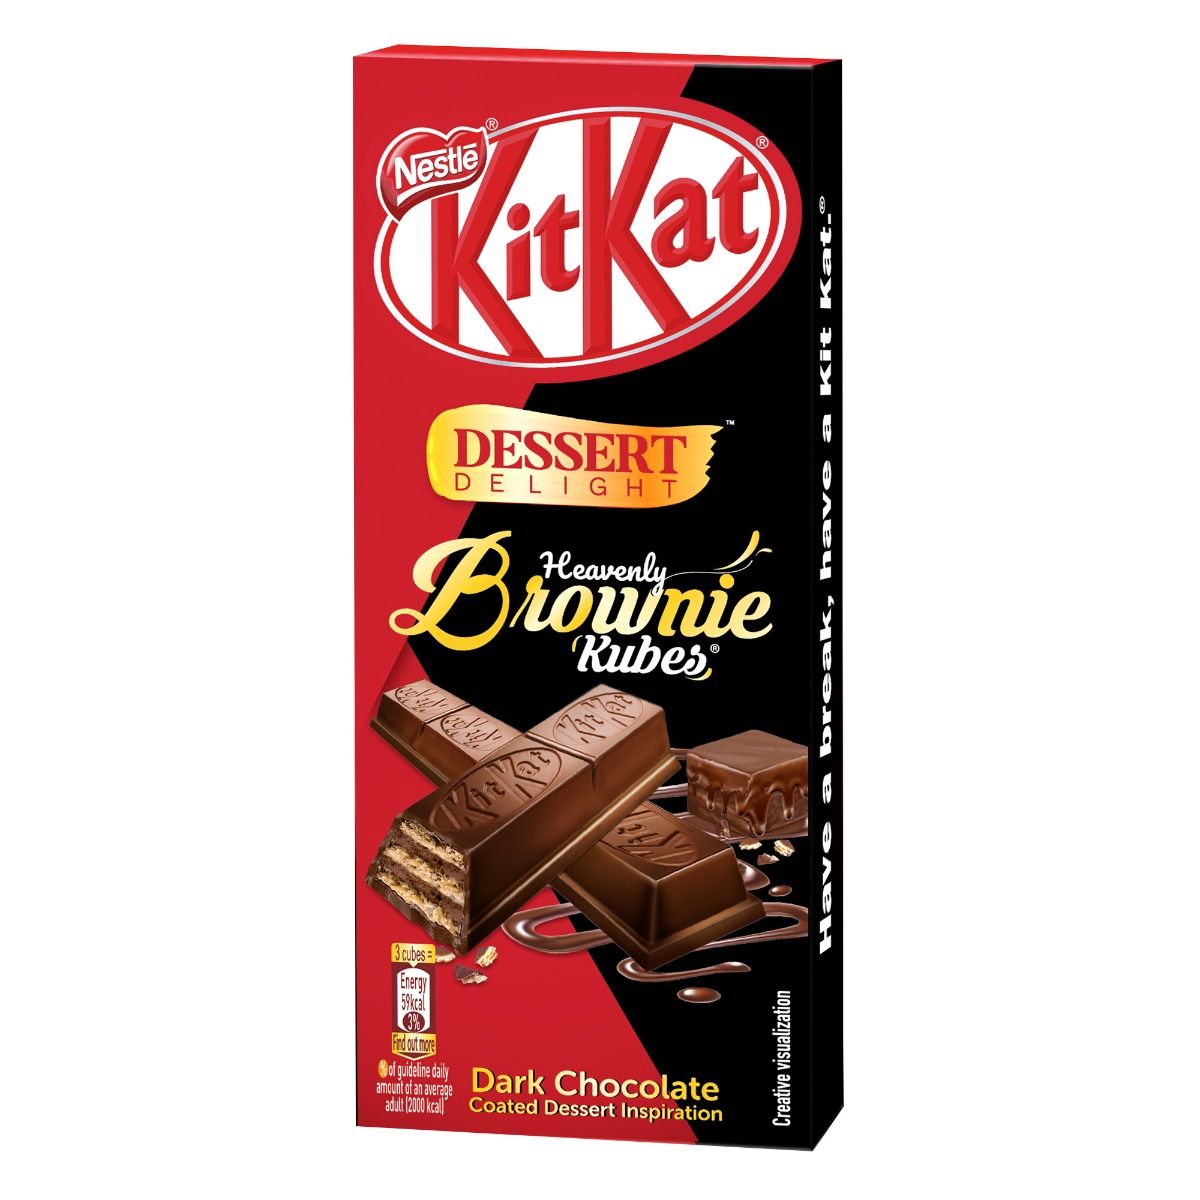 Buy Nestle KitKat Dessert Delight Heavely Brownie-Kubes Bar, 50 gm Online